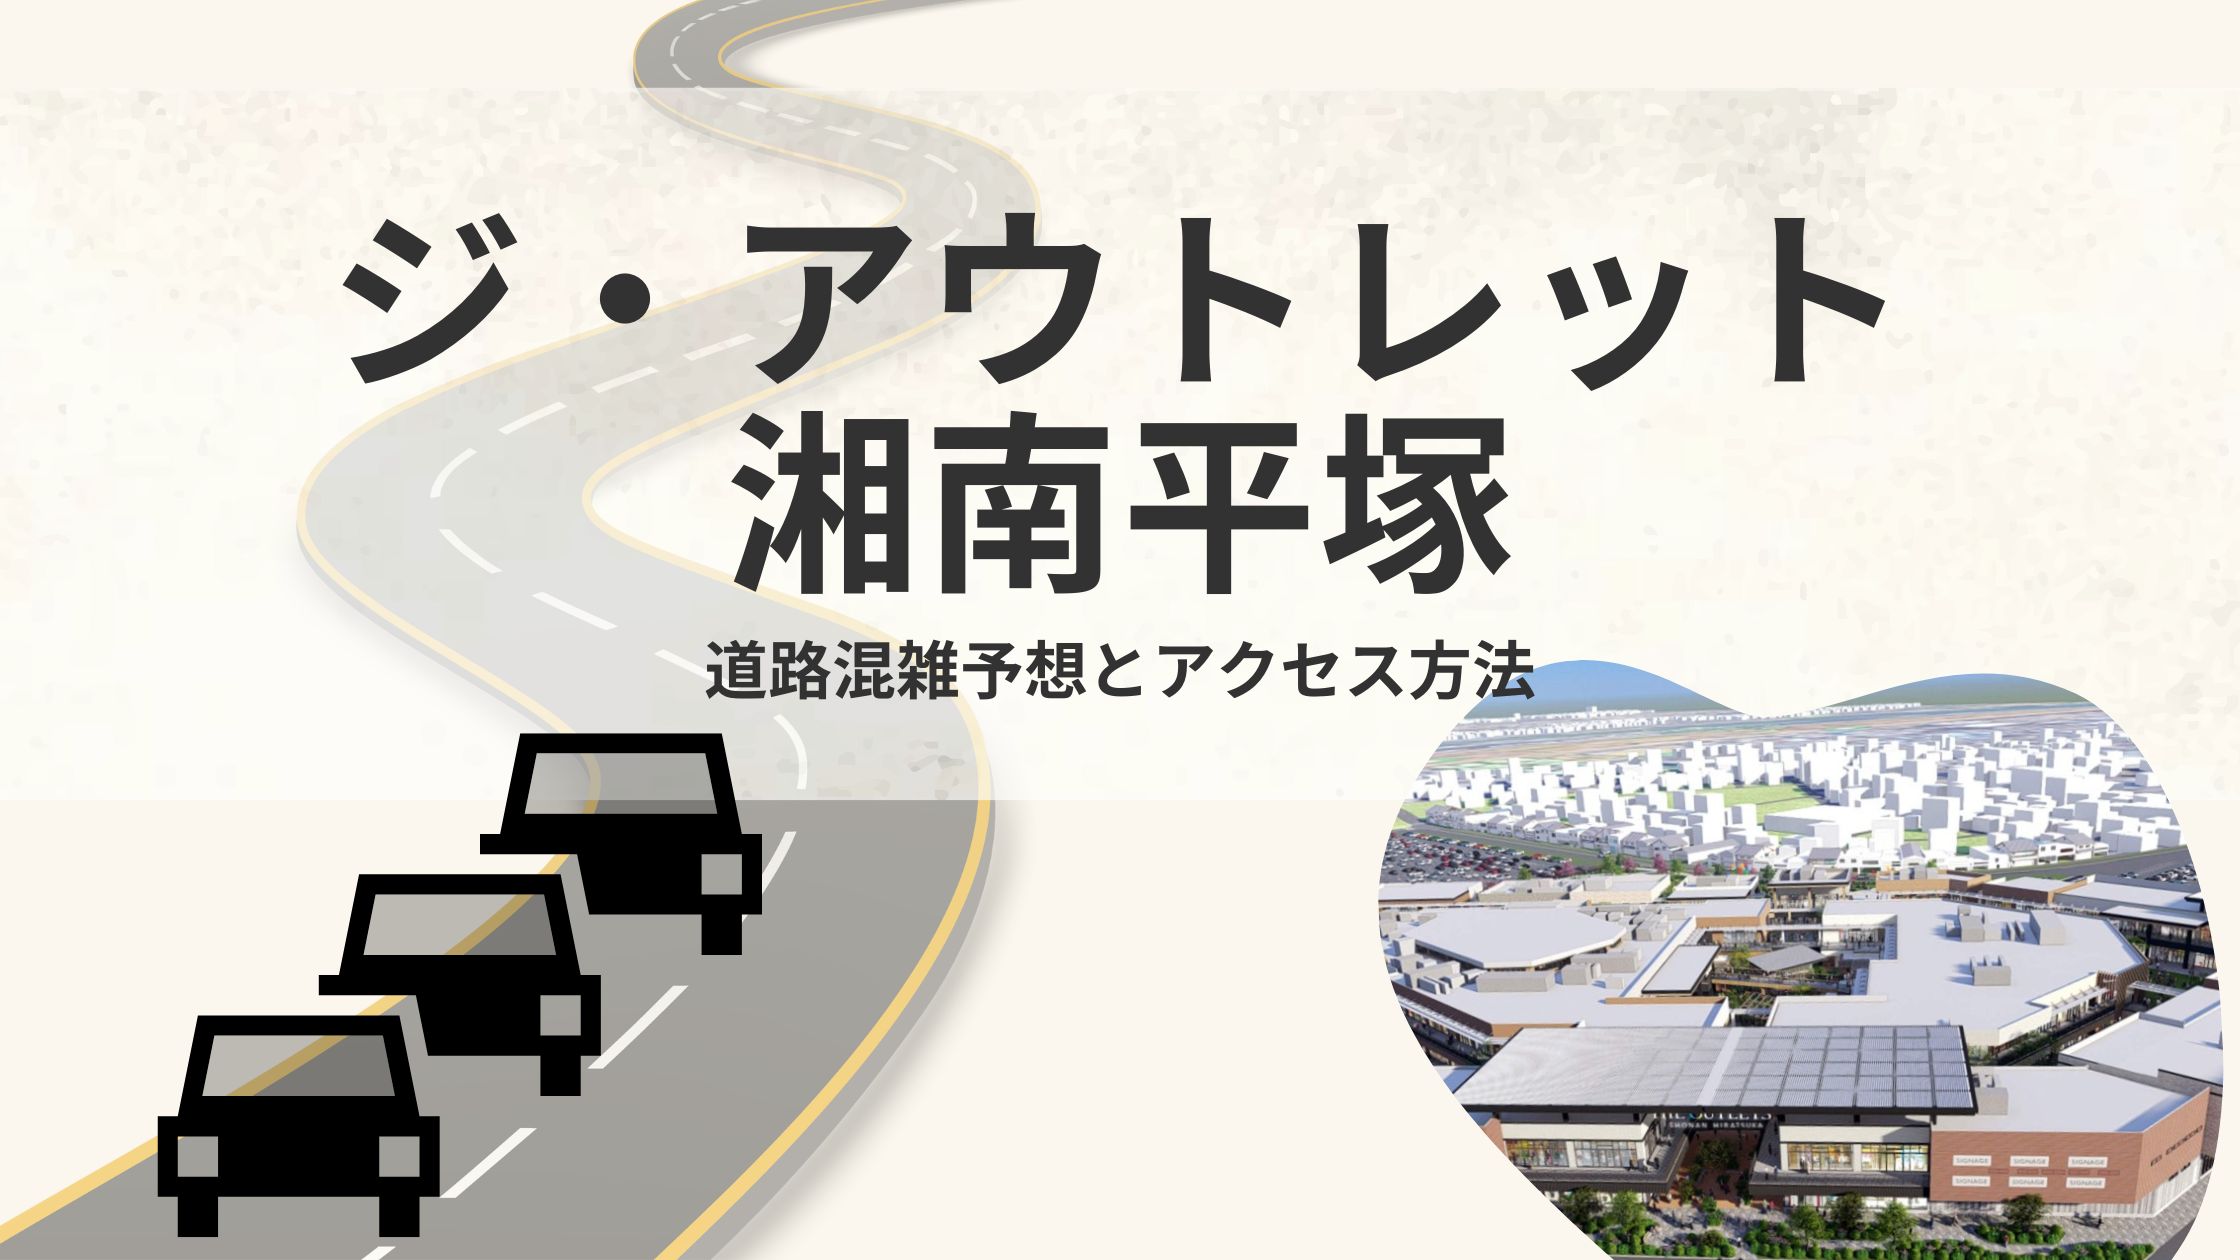 ジ・アウトレット湘南平塚へ行くための交通渋滞予想を地元住民がご紹介します!